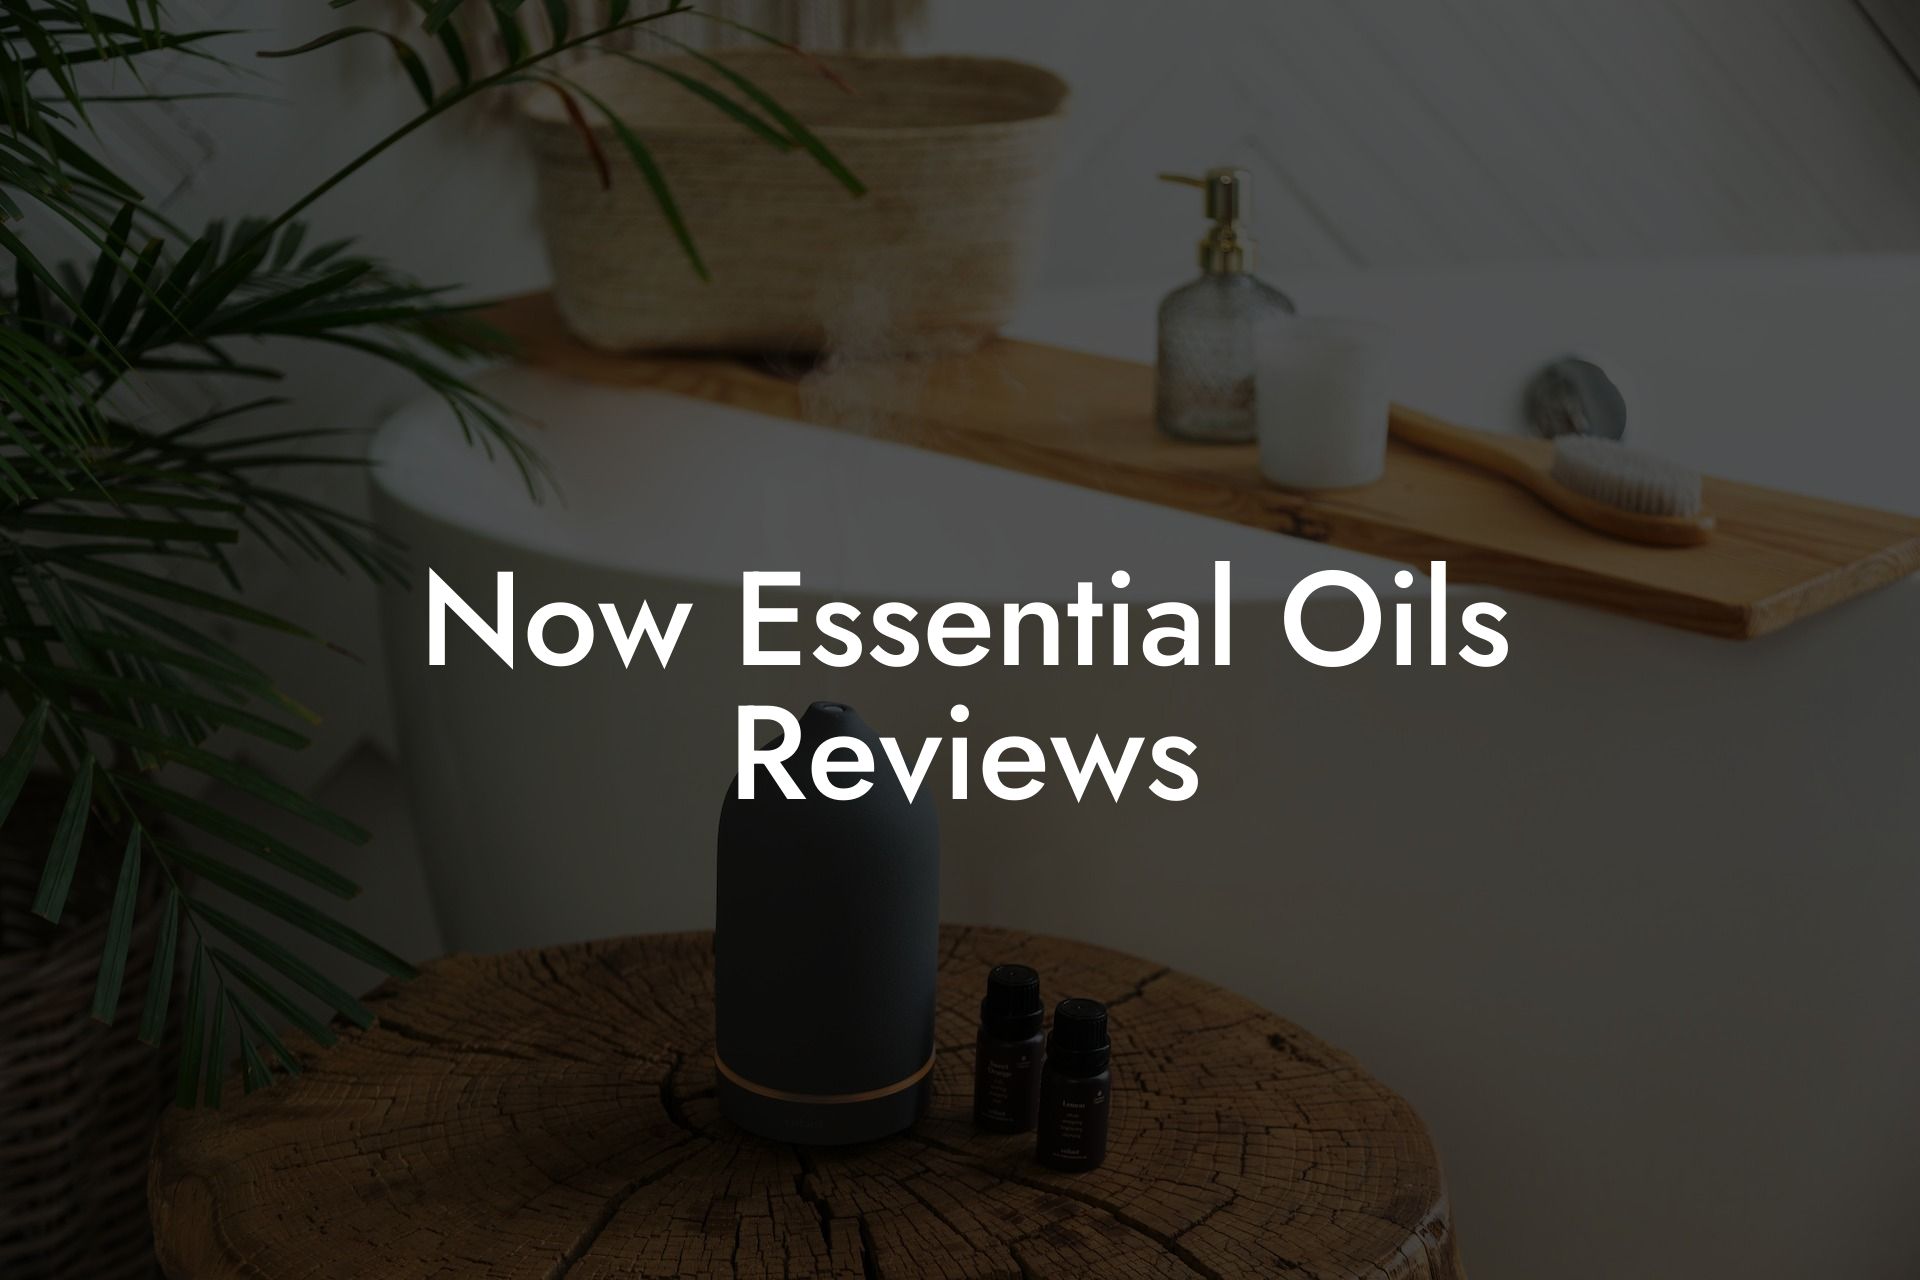 Now Essential Oils Reviews